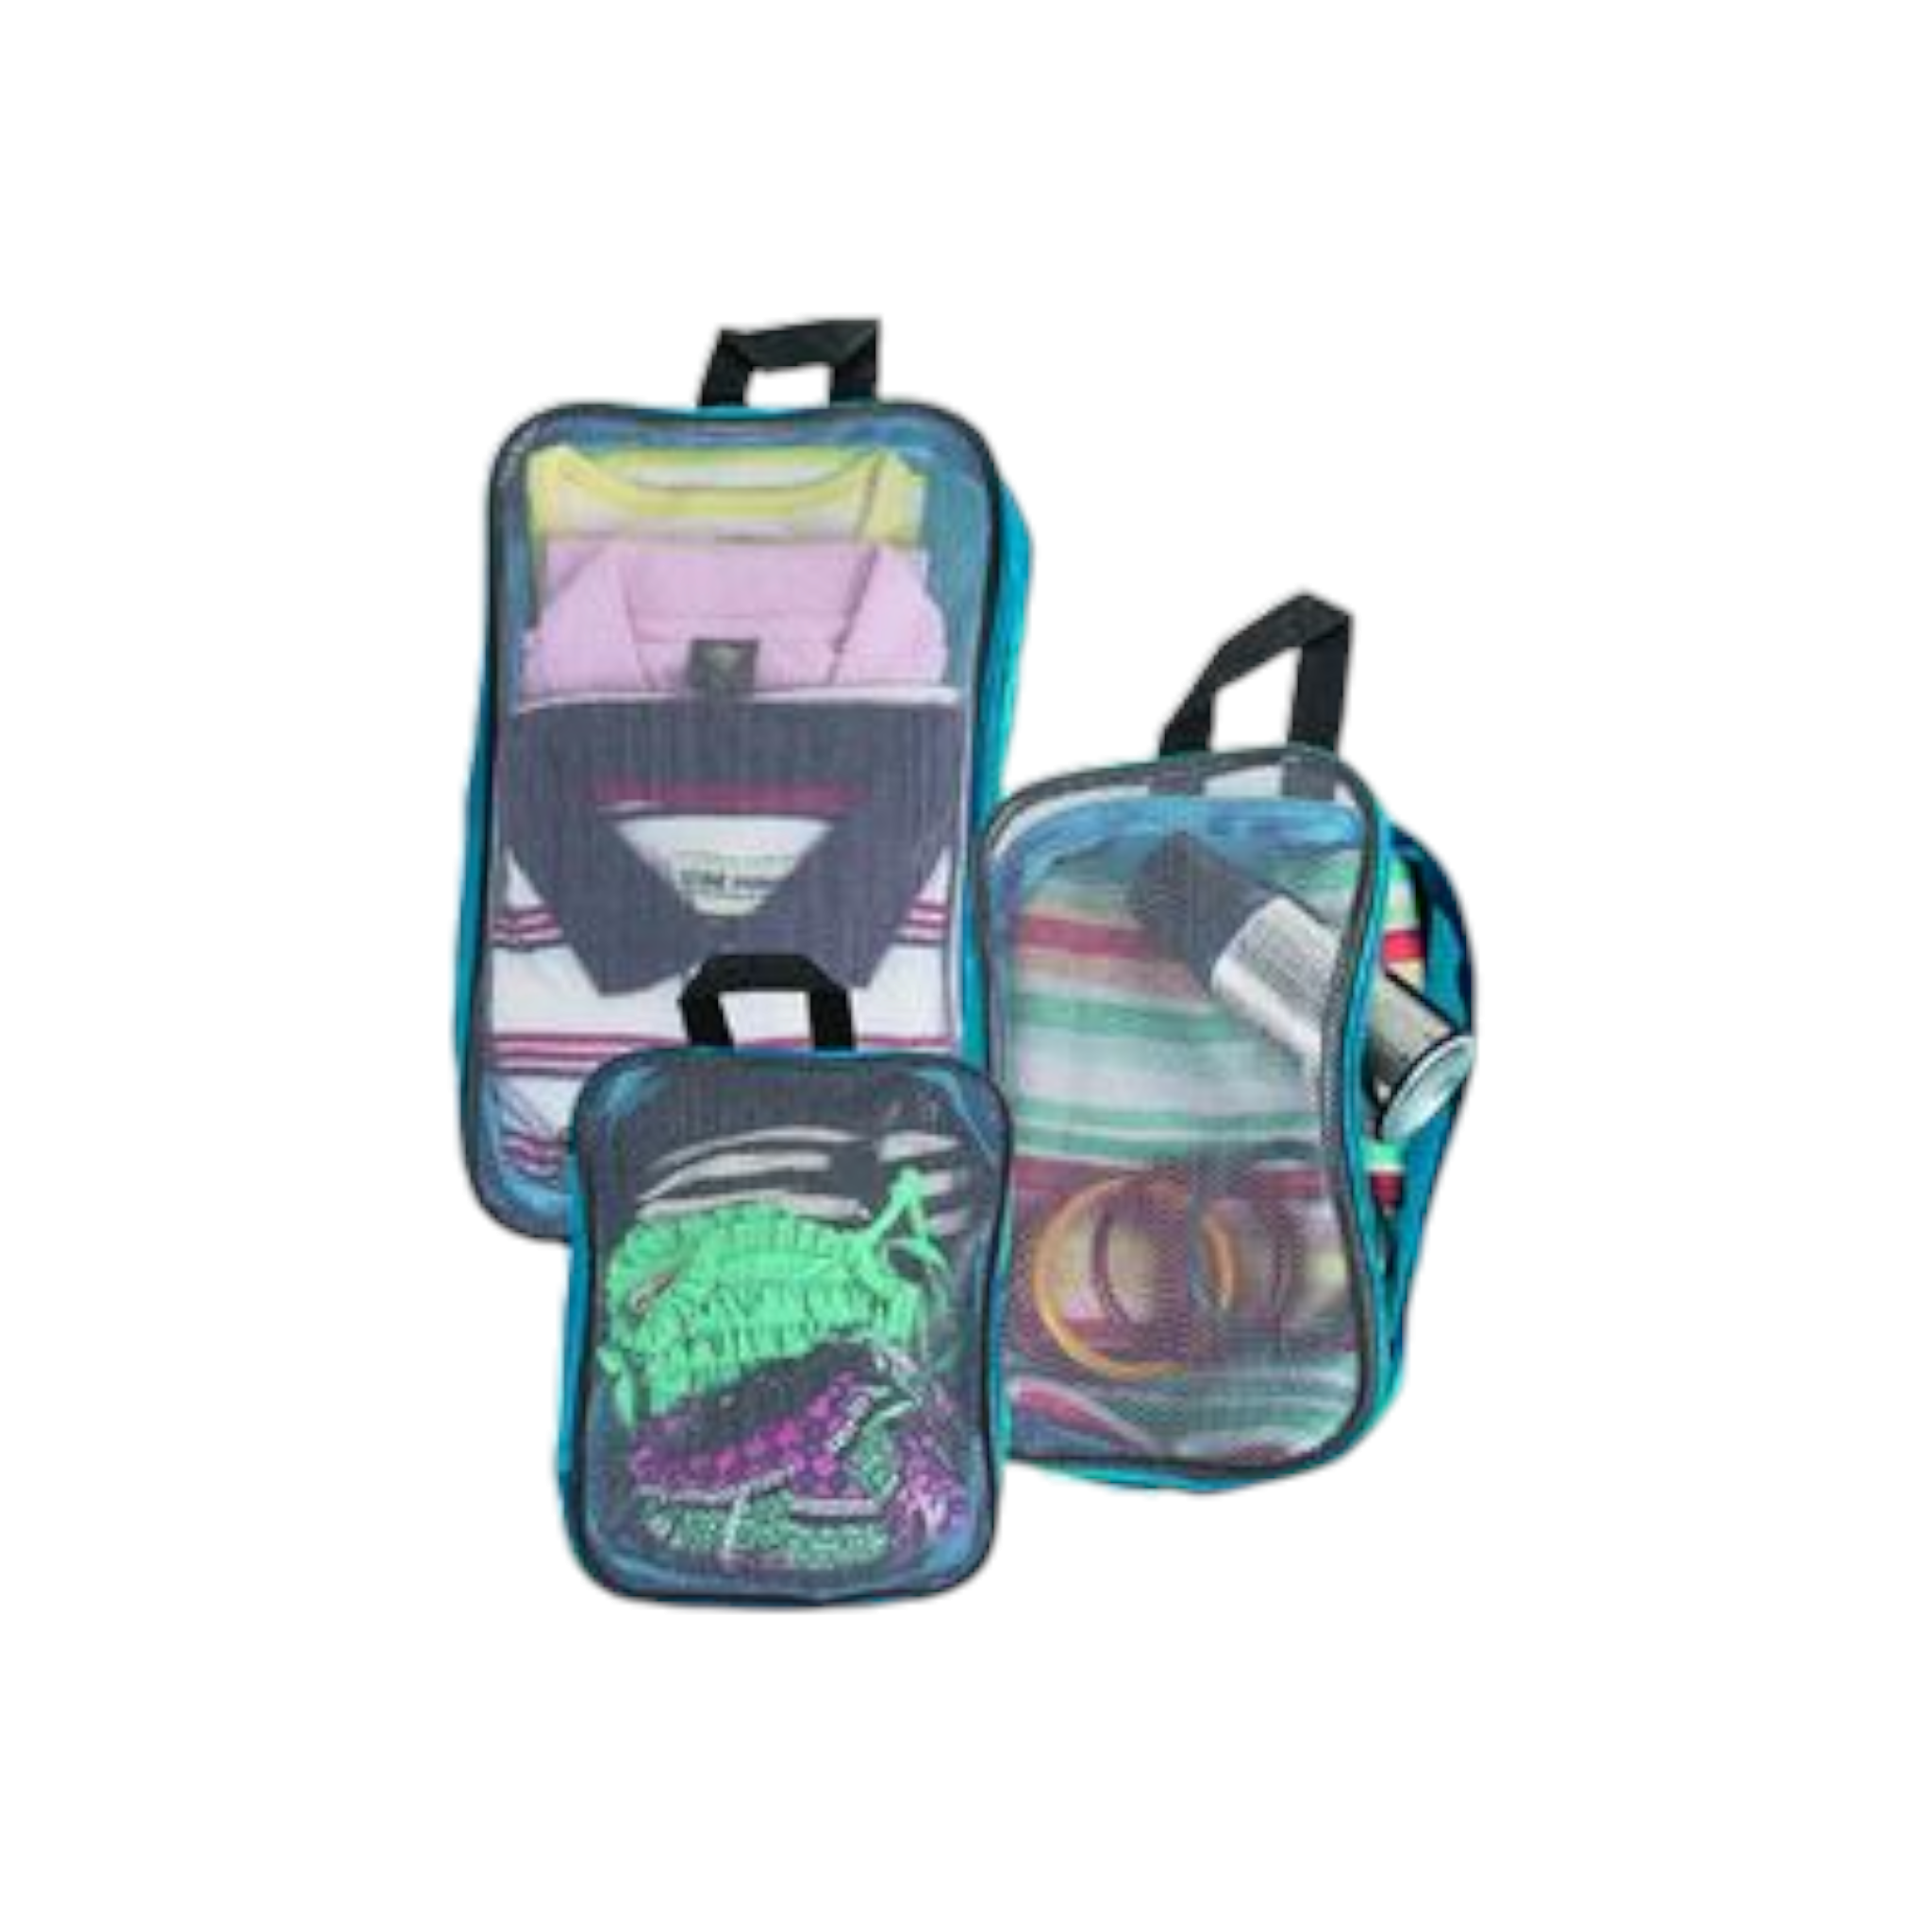 Camping & Travel Luggage Bag Organiser 3pc Set